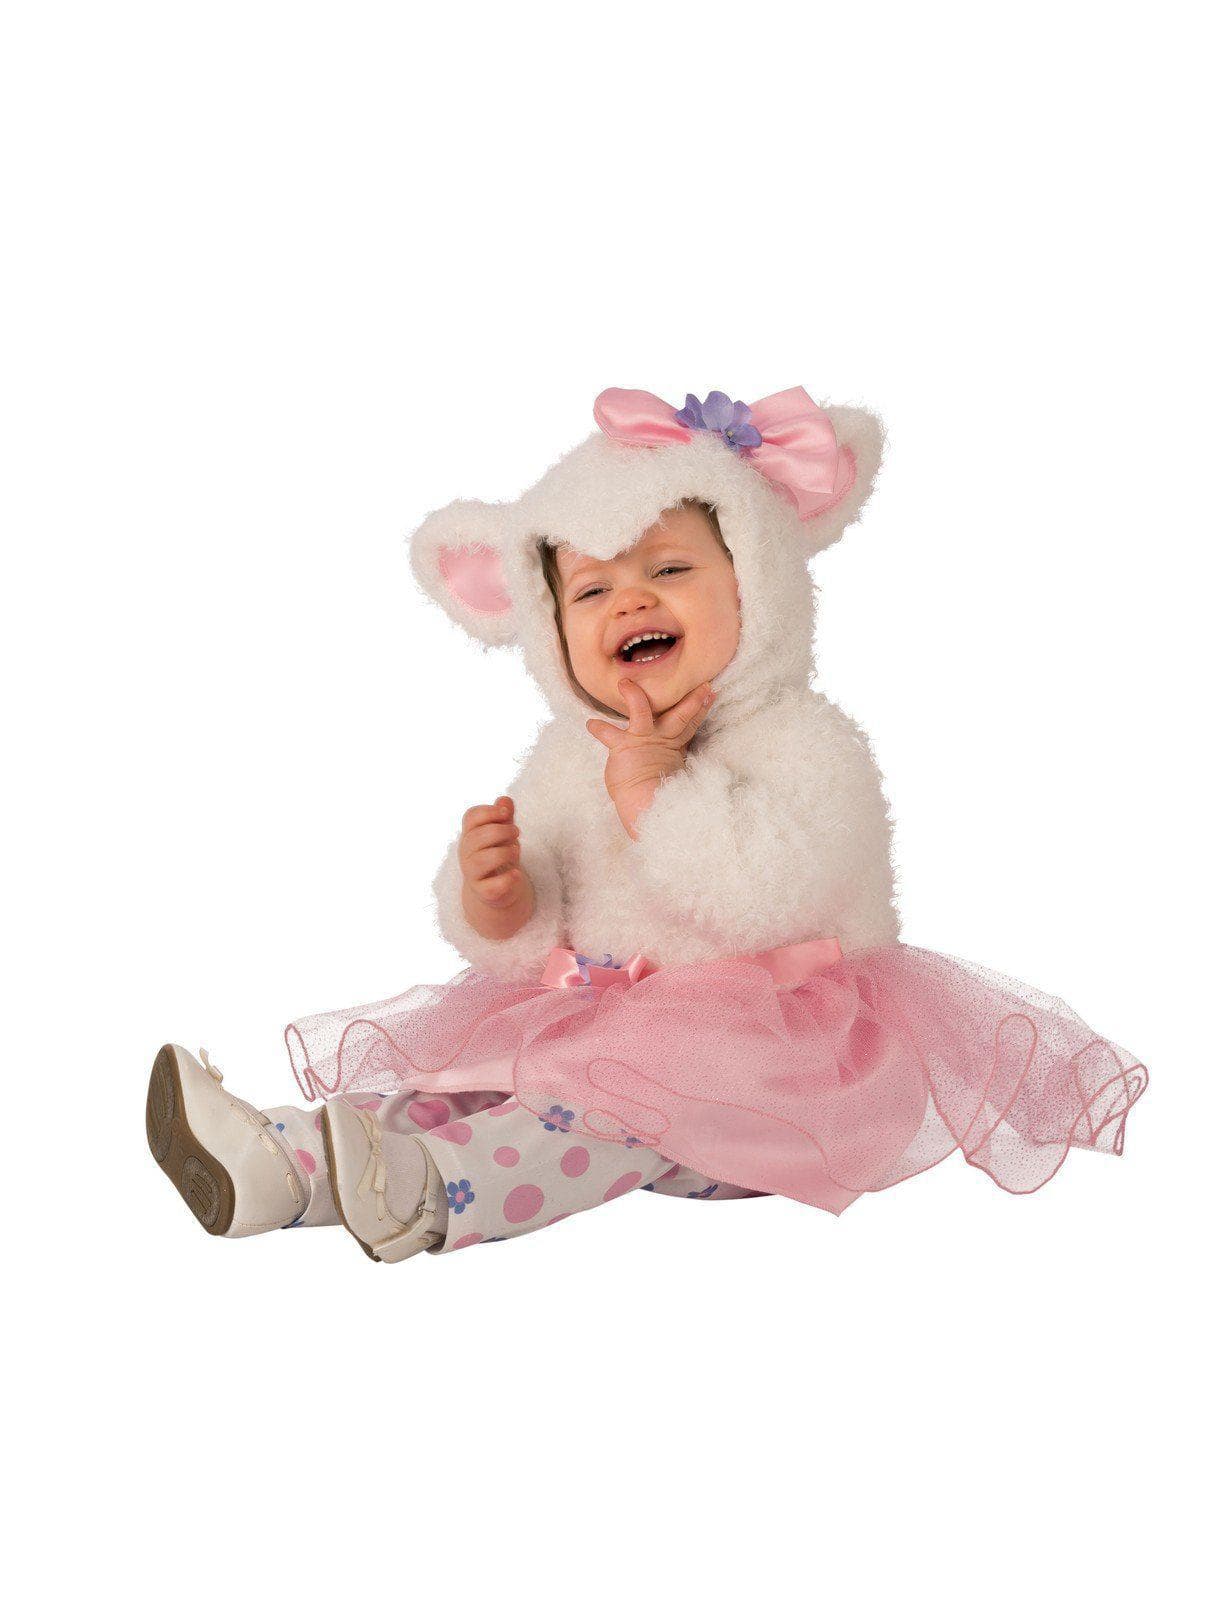 Baby/Toddler Little Lamb Tutu Costume - costumes.com